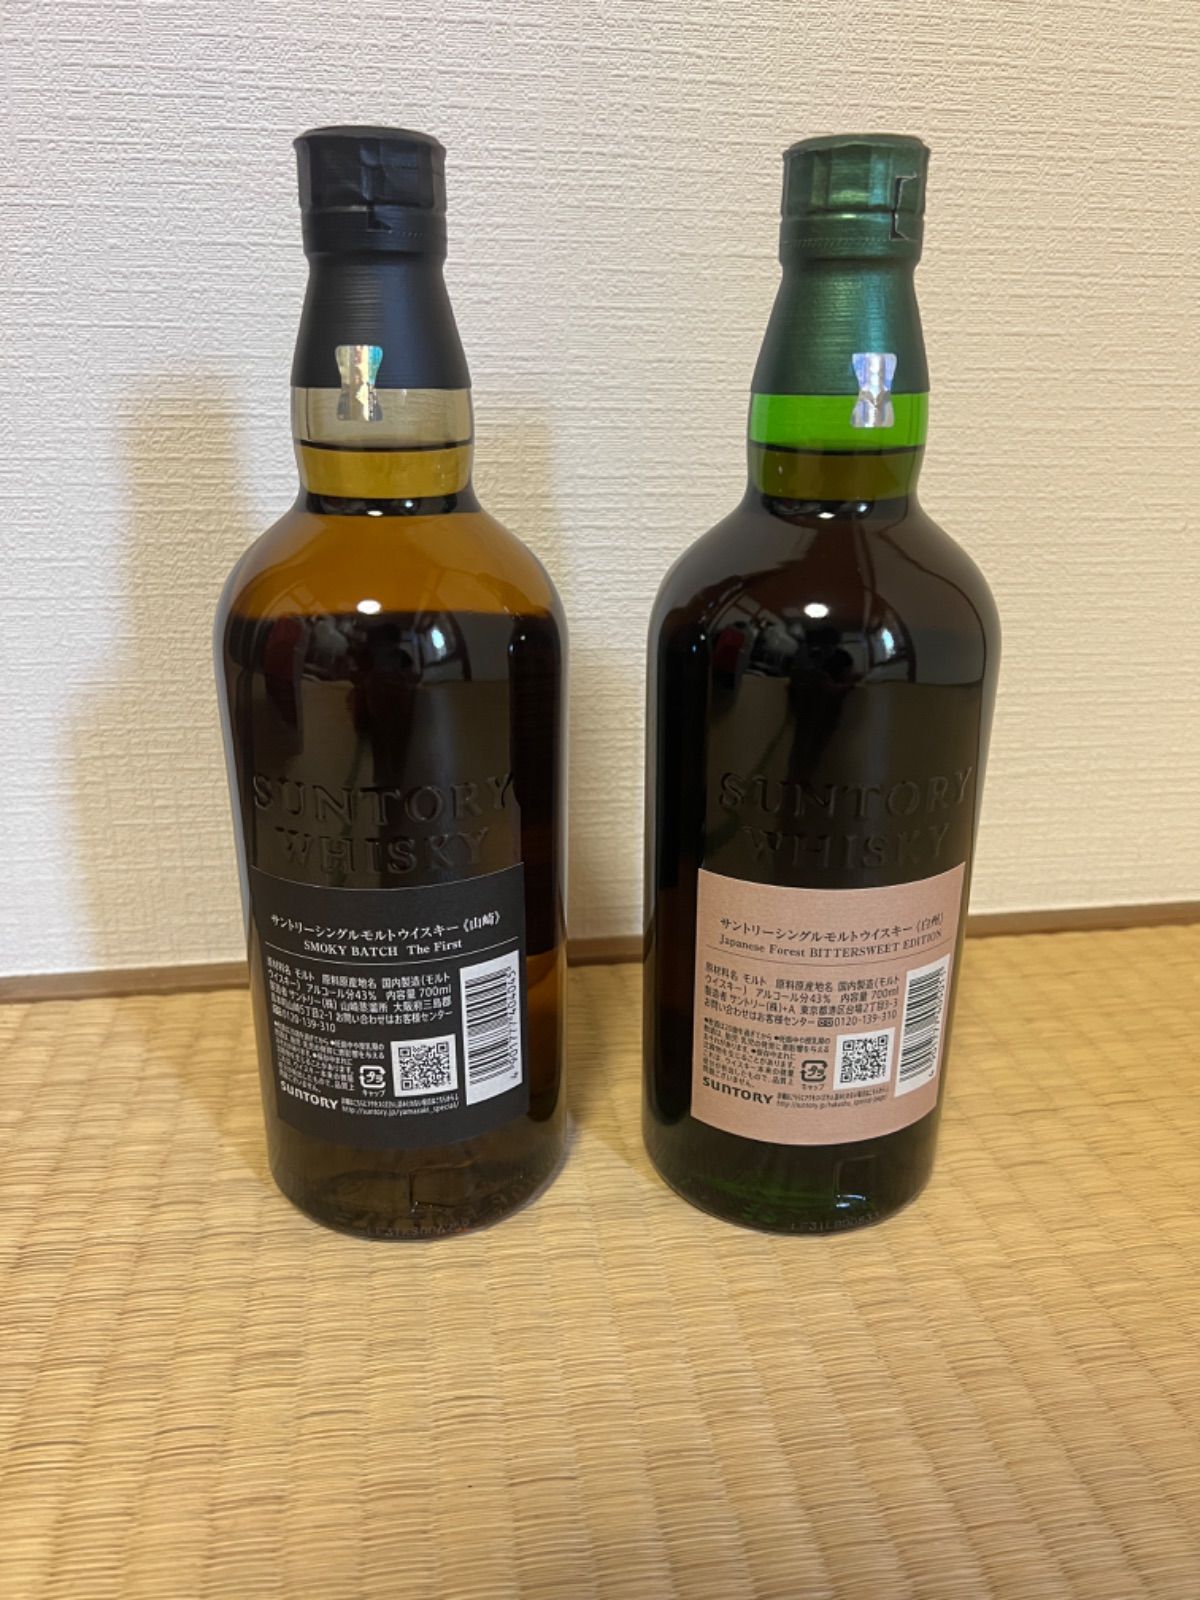 山崎 Smoky Batchと白州 Japanese Forest-2本セット - 酒